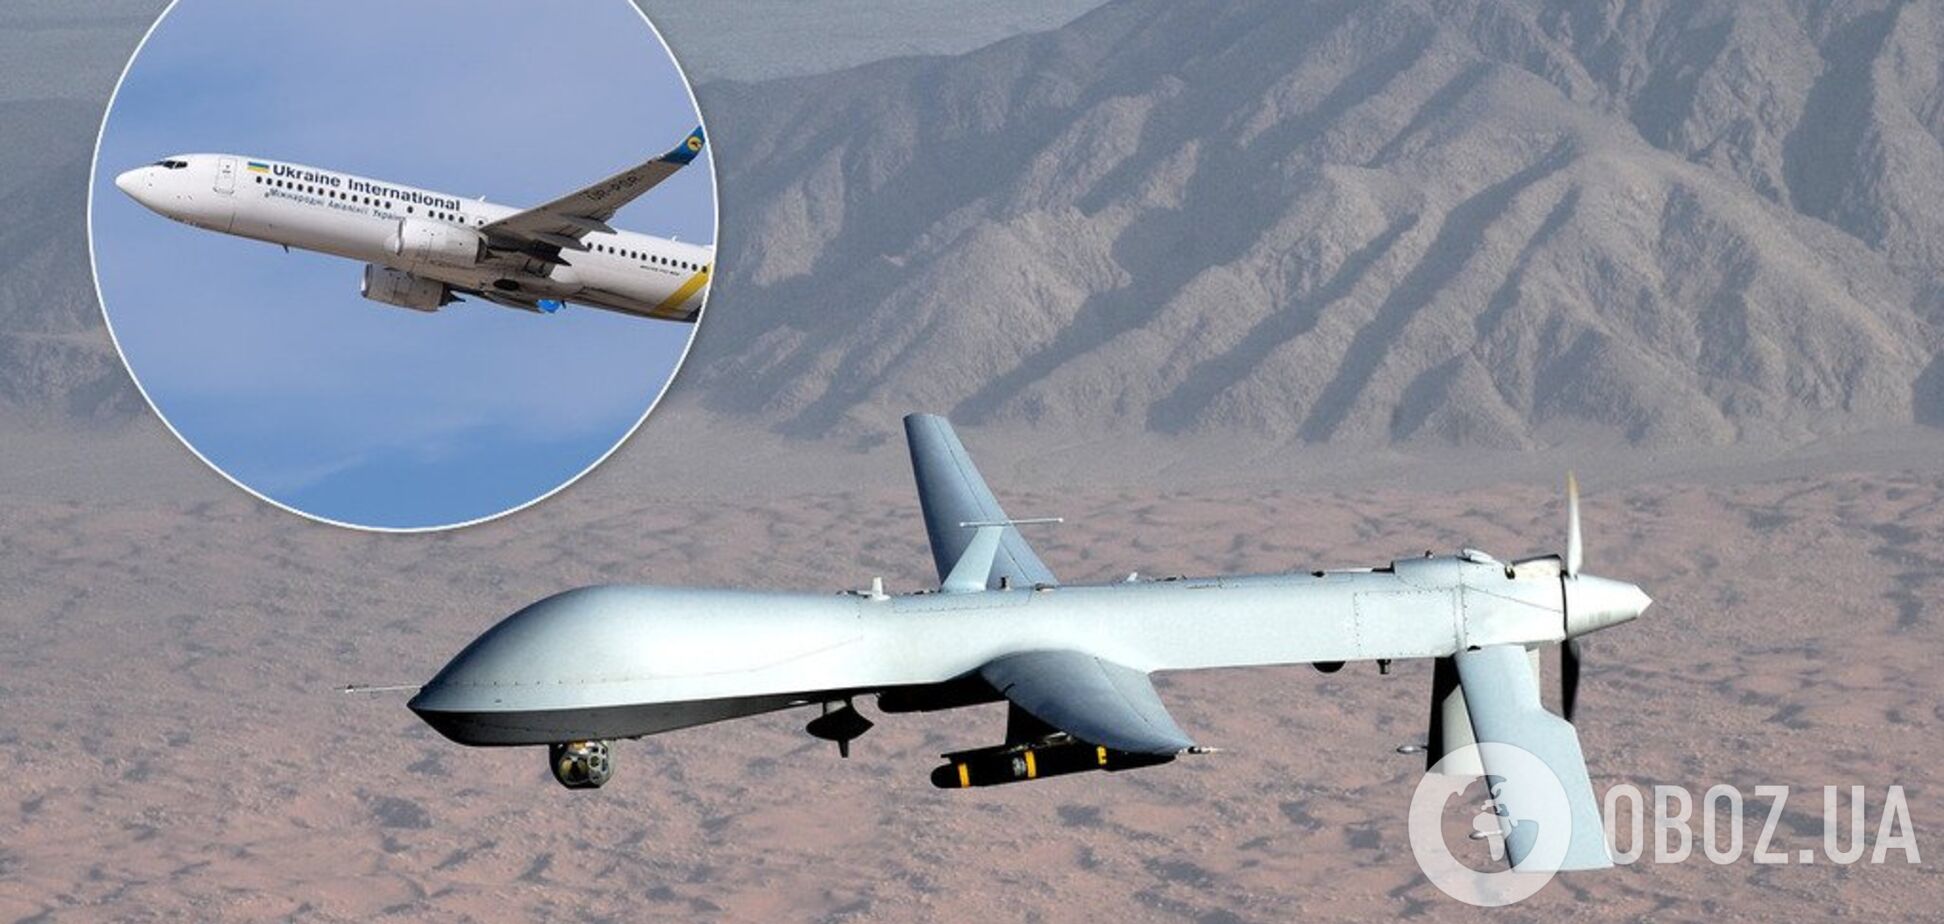 'Это абсурд': эксперт по дронам опроверг версию катастрофы самолета МАУ